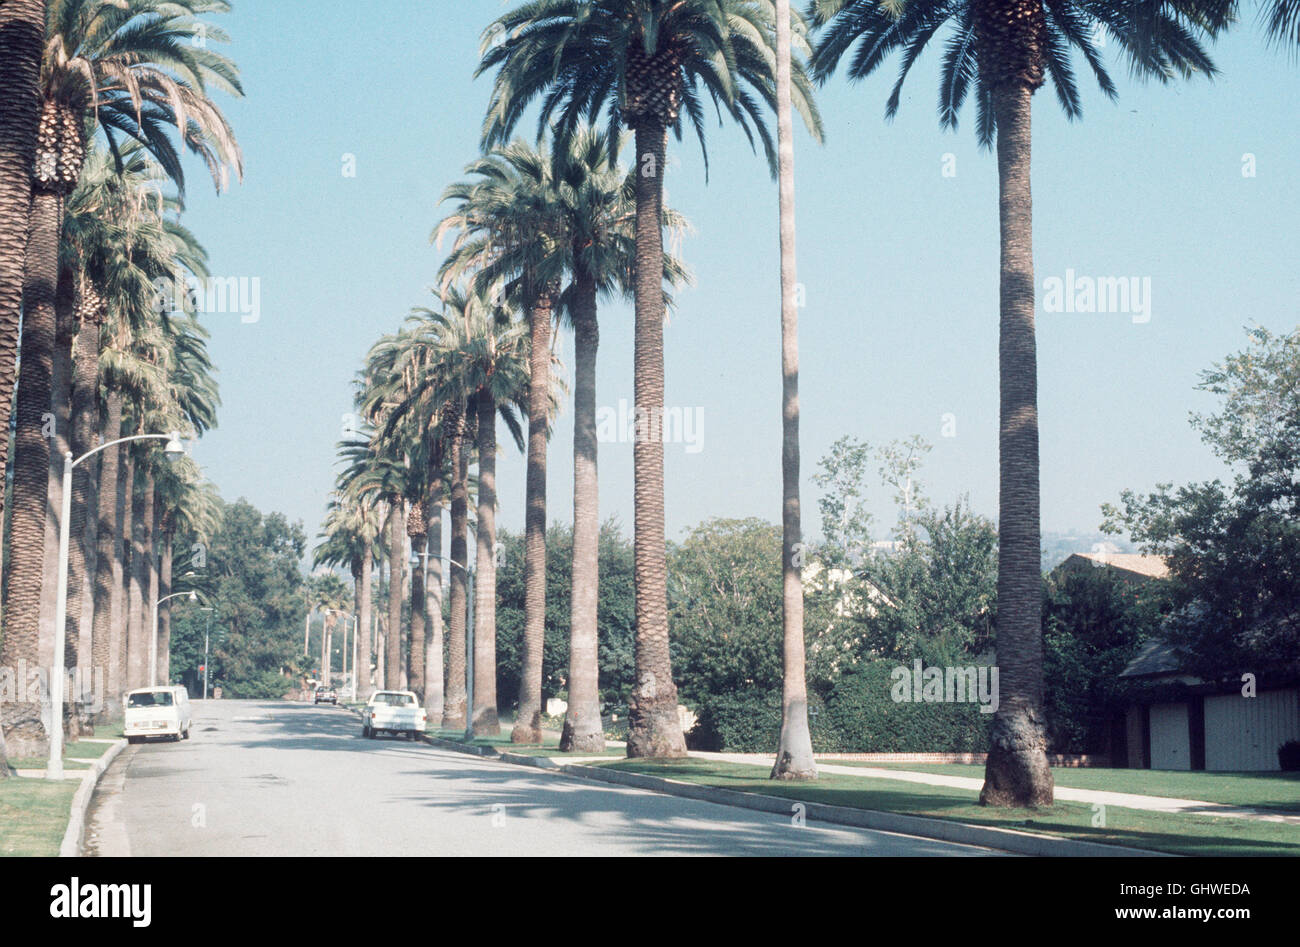 LOST ANGELES- Los Angeles gilt als Modell für "villaggio globale" - es ist eine Stadt ohne Zentrum, eine Stadt, die keinen Halt gibt, eine Stadt der Zukunft in der alles offen möglich ist. Traum und Trauma sind hier oft identisch. 'Lost Angeles' macht an den wichtigsten Schauplätzen dieser Stadt den Wahn und den Wahnsinn, den orrore und die alti von Los Angeles erlebbar. BIld: LOS ANGELES; BEVERLY HILLS G aka. Dokumentarfilm von Eckhart Schmidt Foto Stock